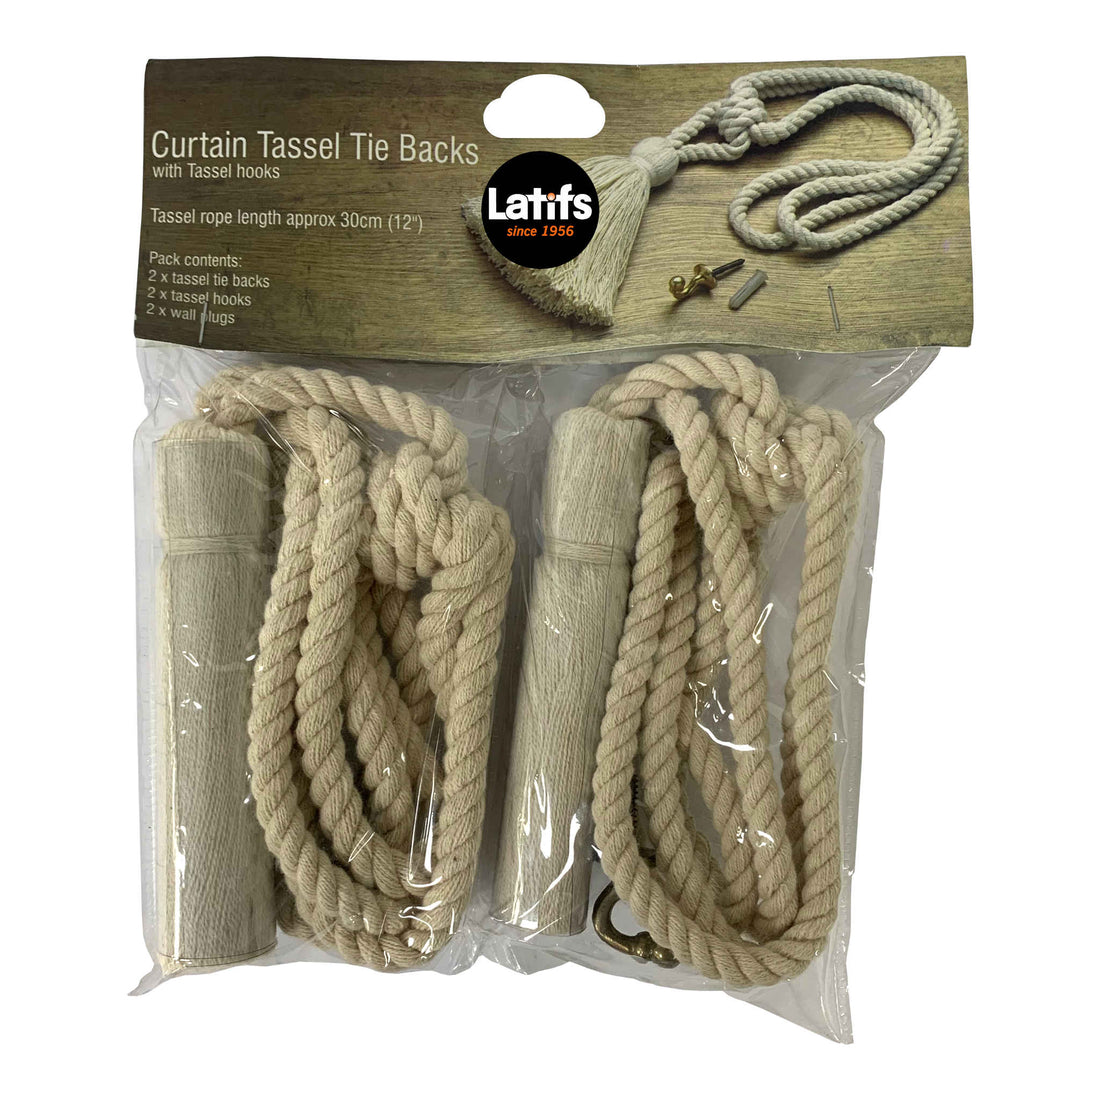 Curtain Tassel Tie Backs with Tassel Hooks | 2 Pack